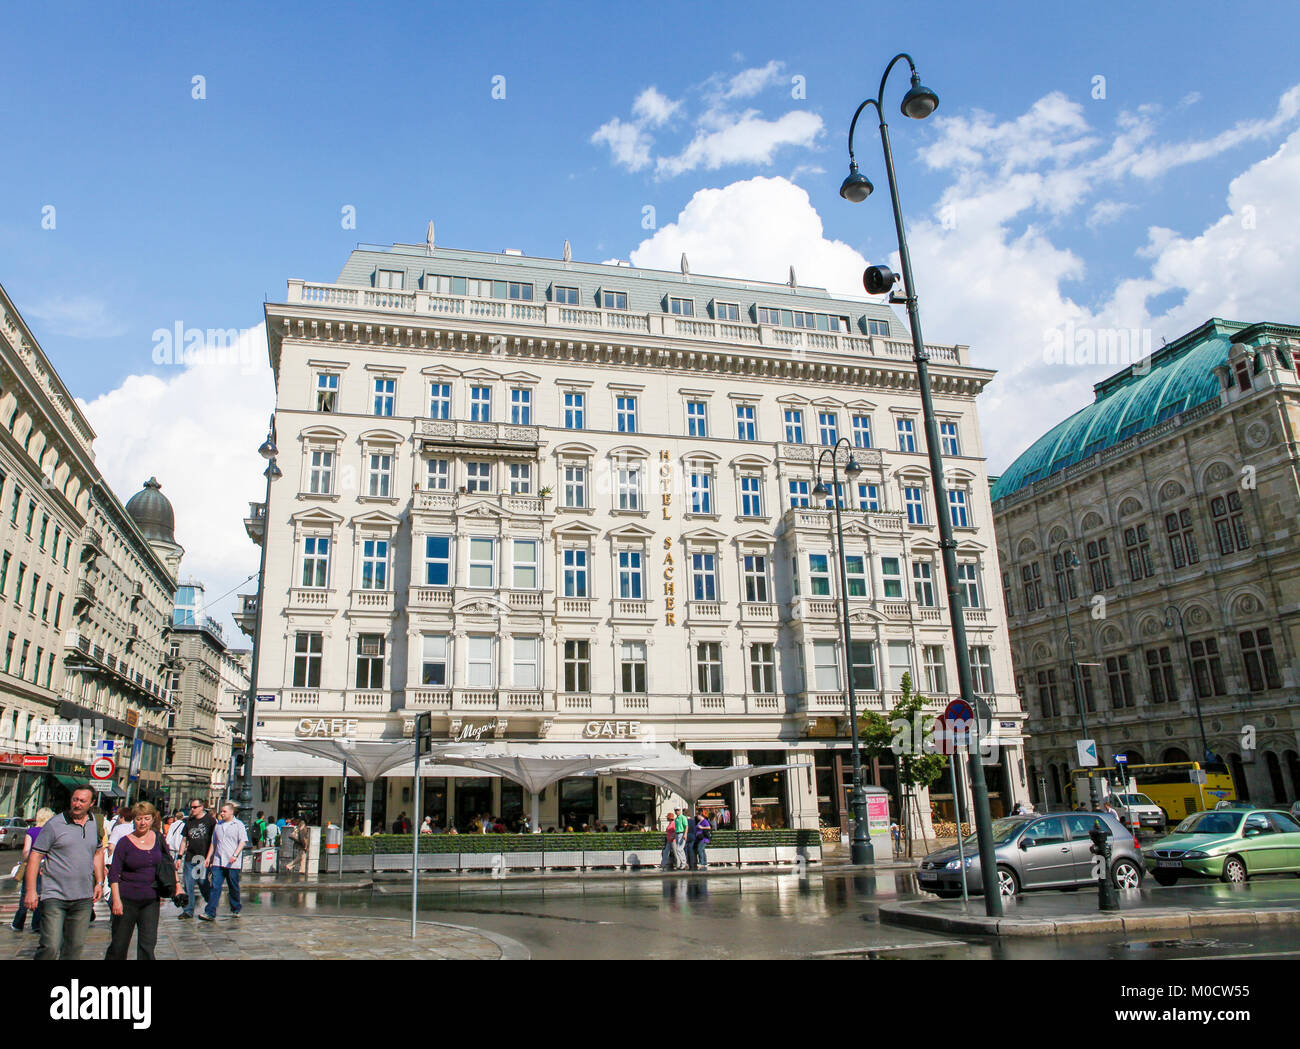 Avis sur l'hôtel Sacher, un célèbre hôtel cinq étoiles à l'Innere Stadt 1er arrondissement de Vienne, Autriche Banque D'Images